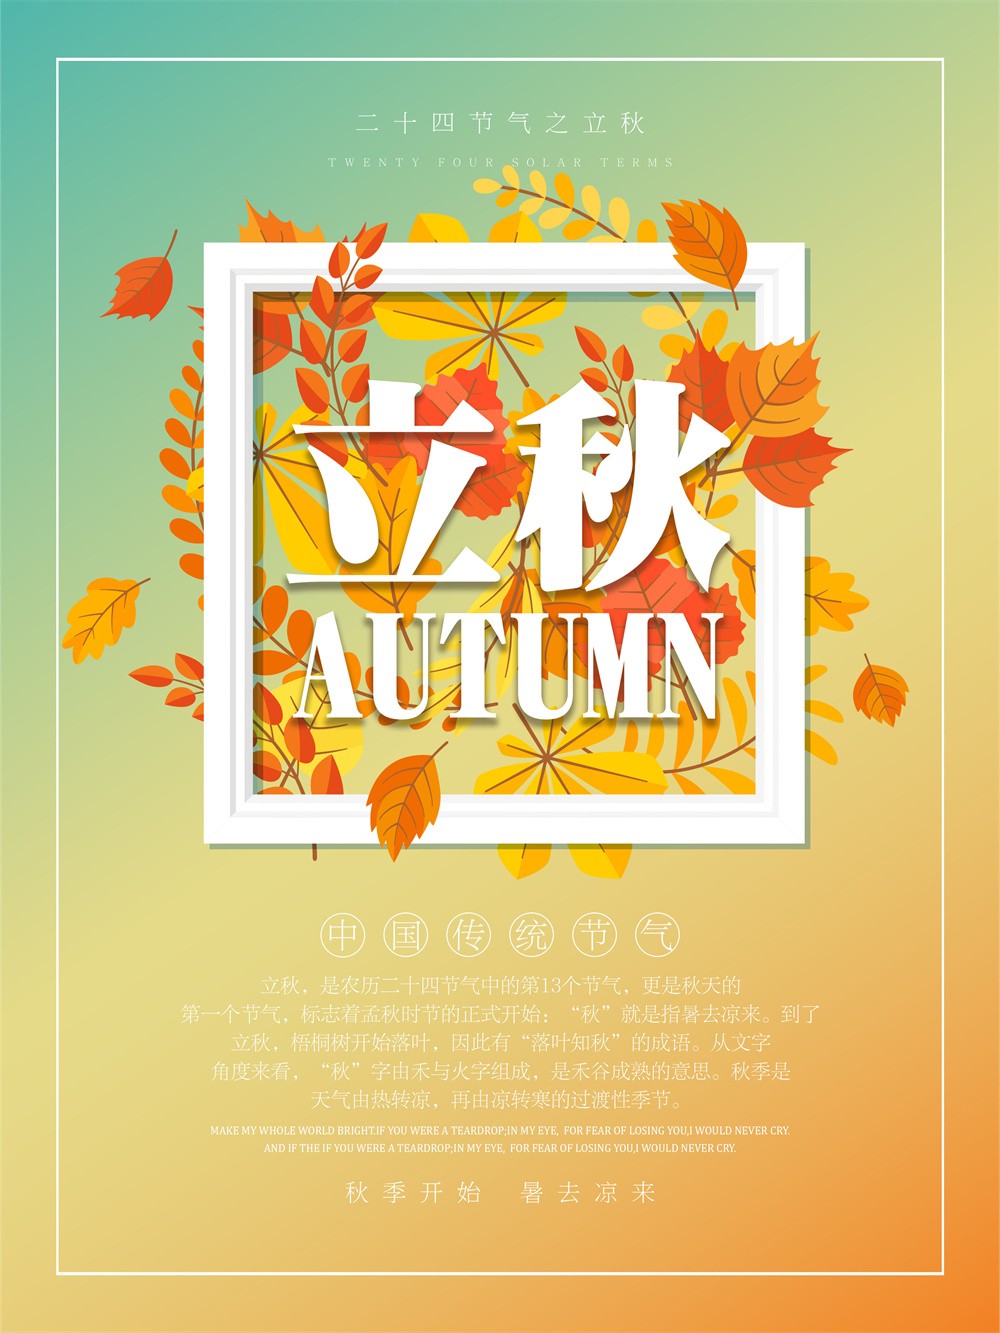 中国传统节气立秋唯美艺术海报